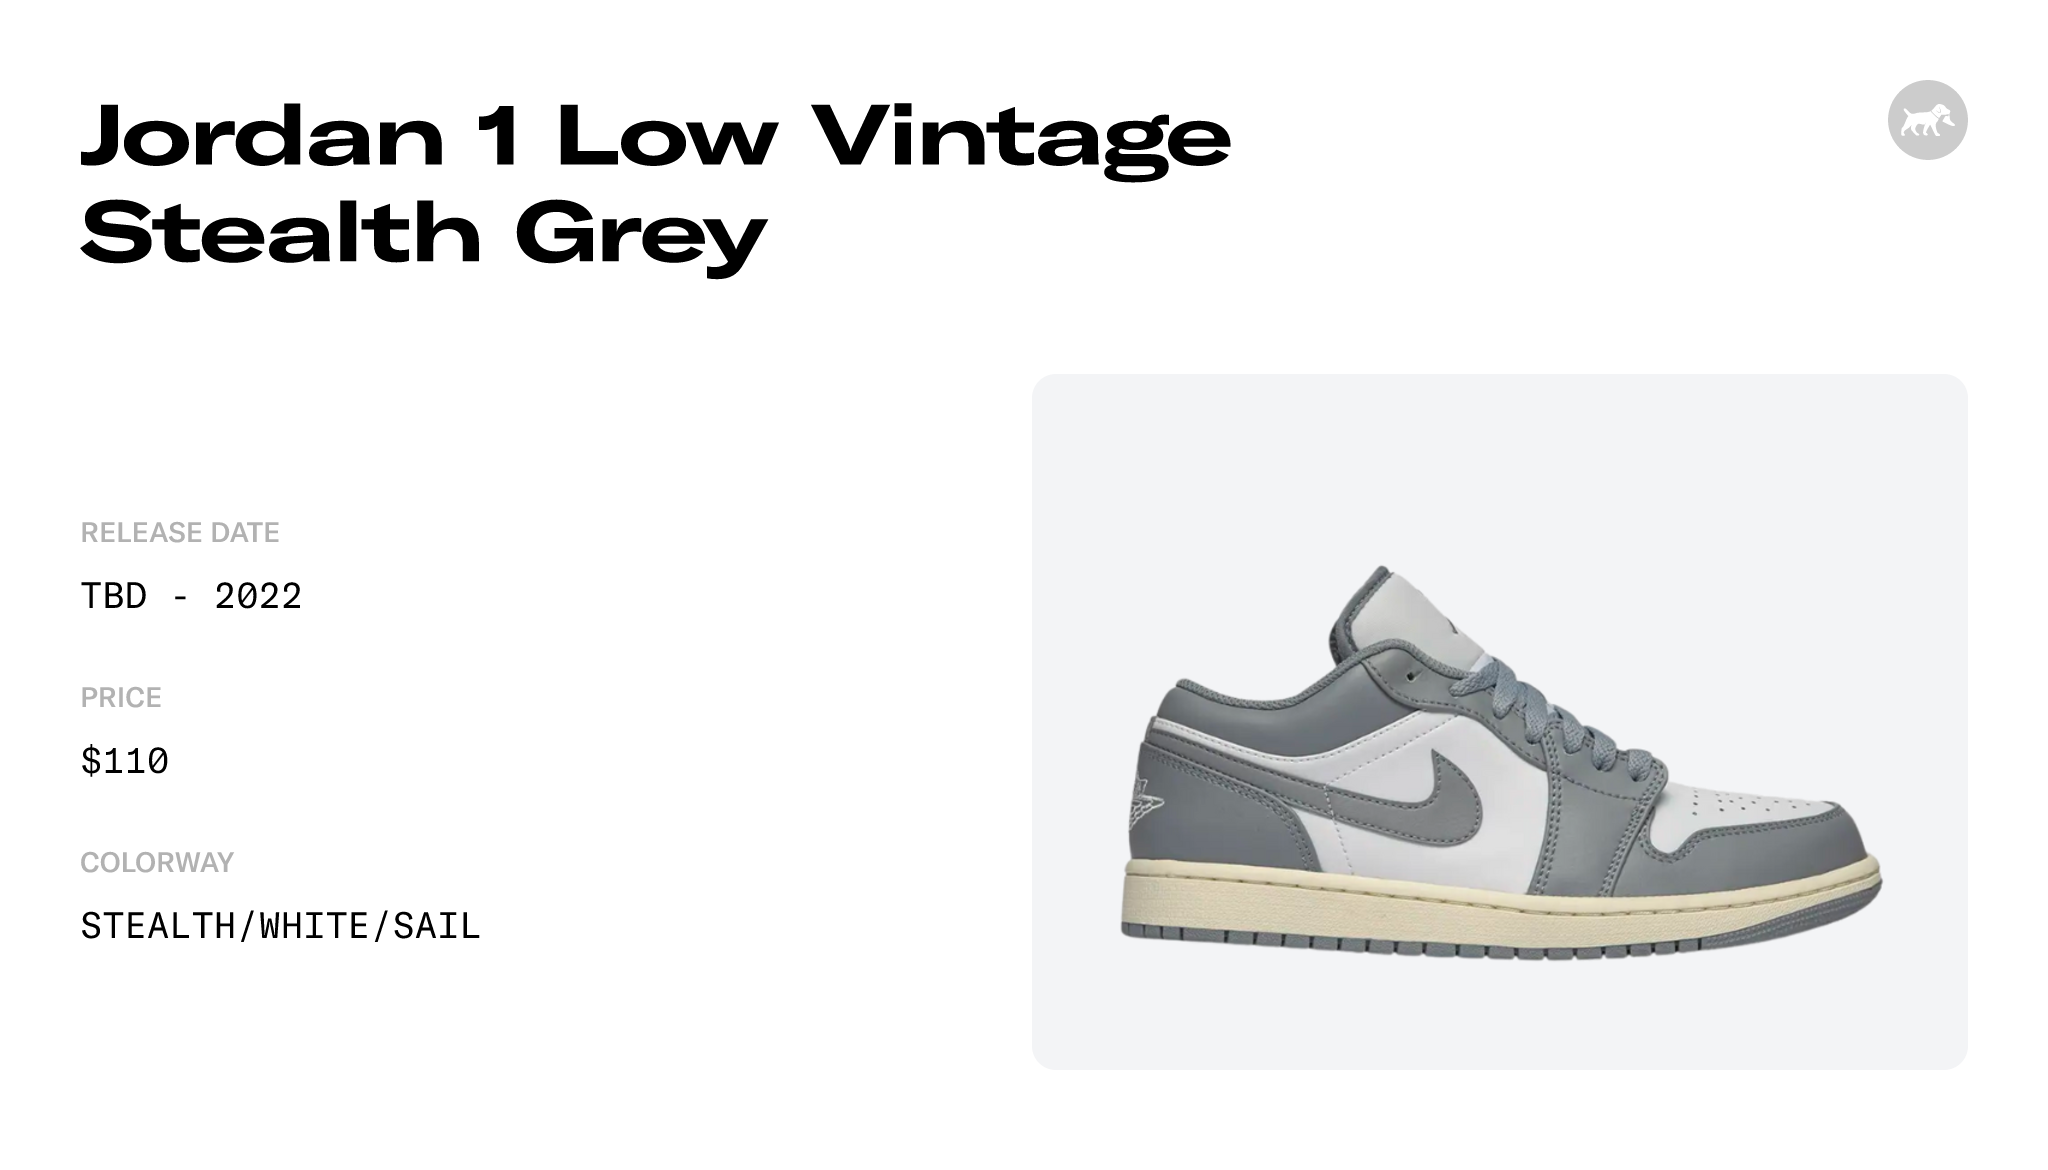 Jordan 1 Low Vintage Stealth Grey - 553558-053 Raffles and Release 